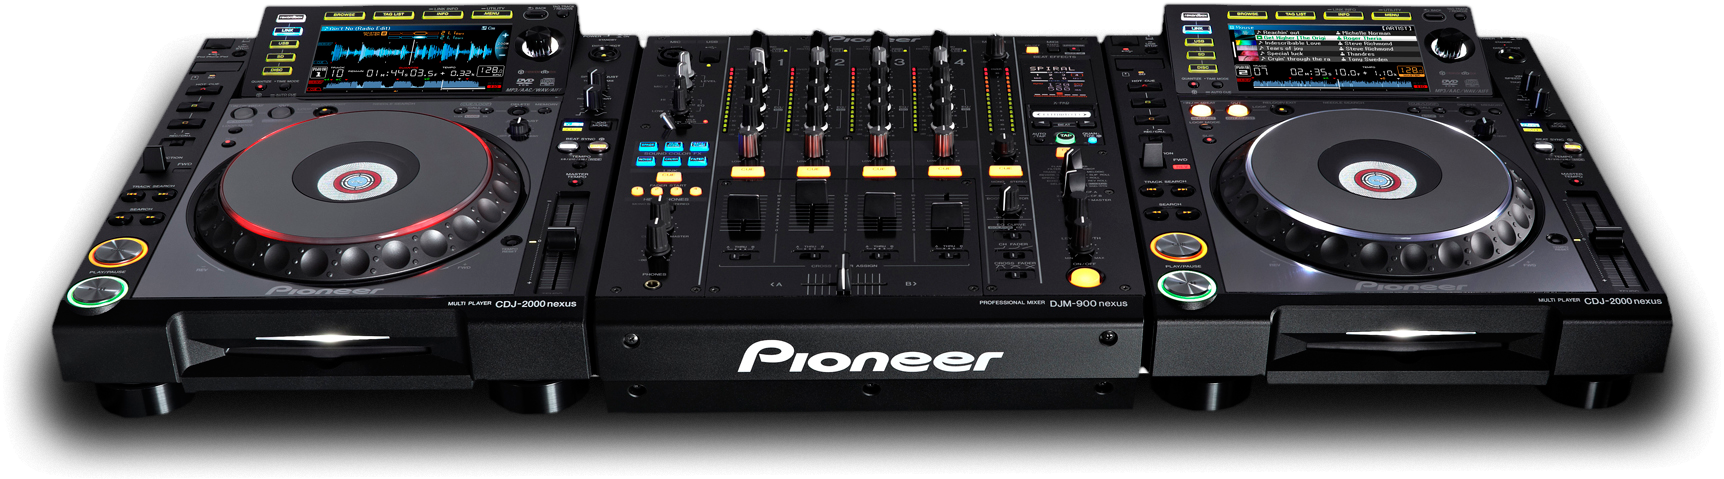 DJ Mixer PNG File Download Free